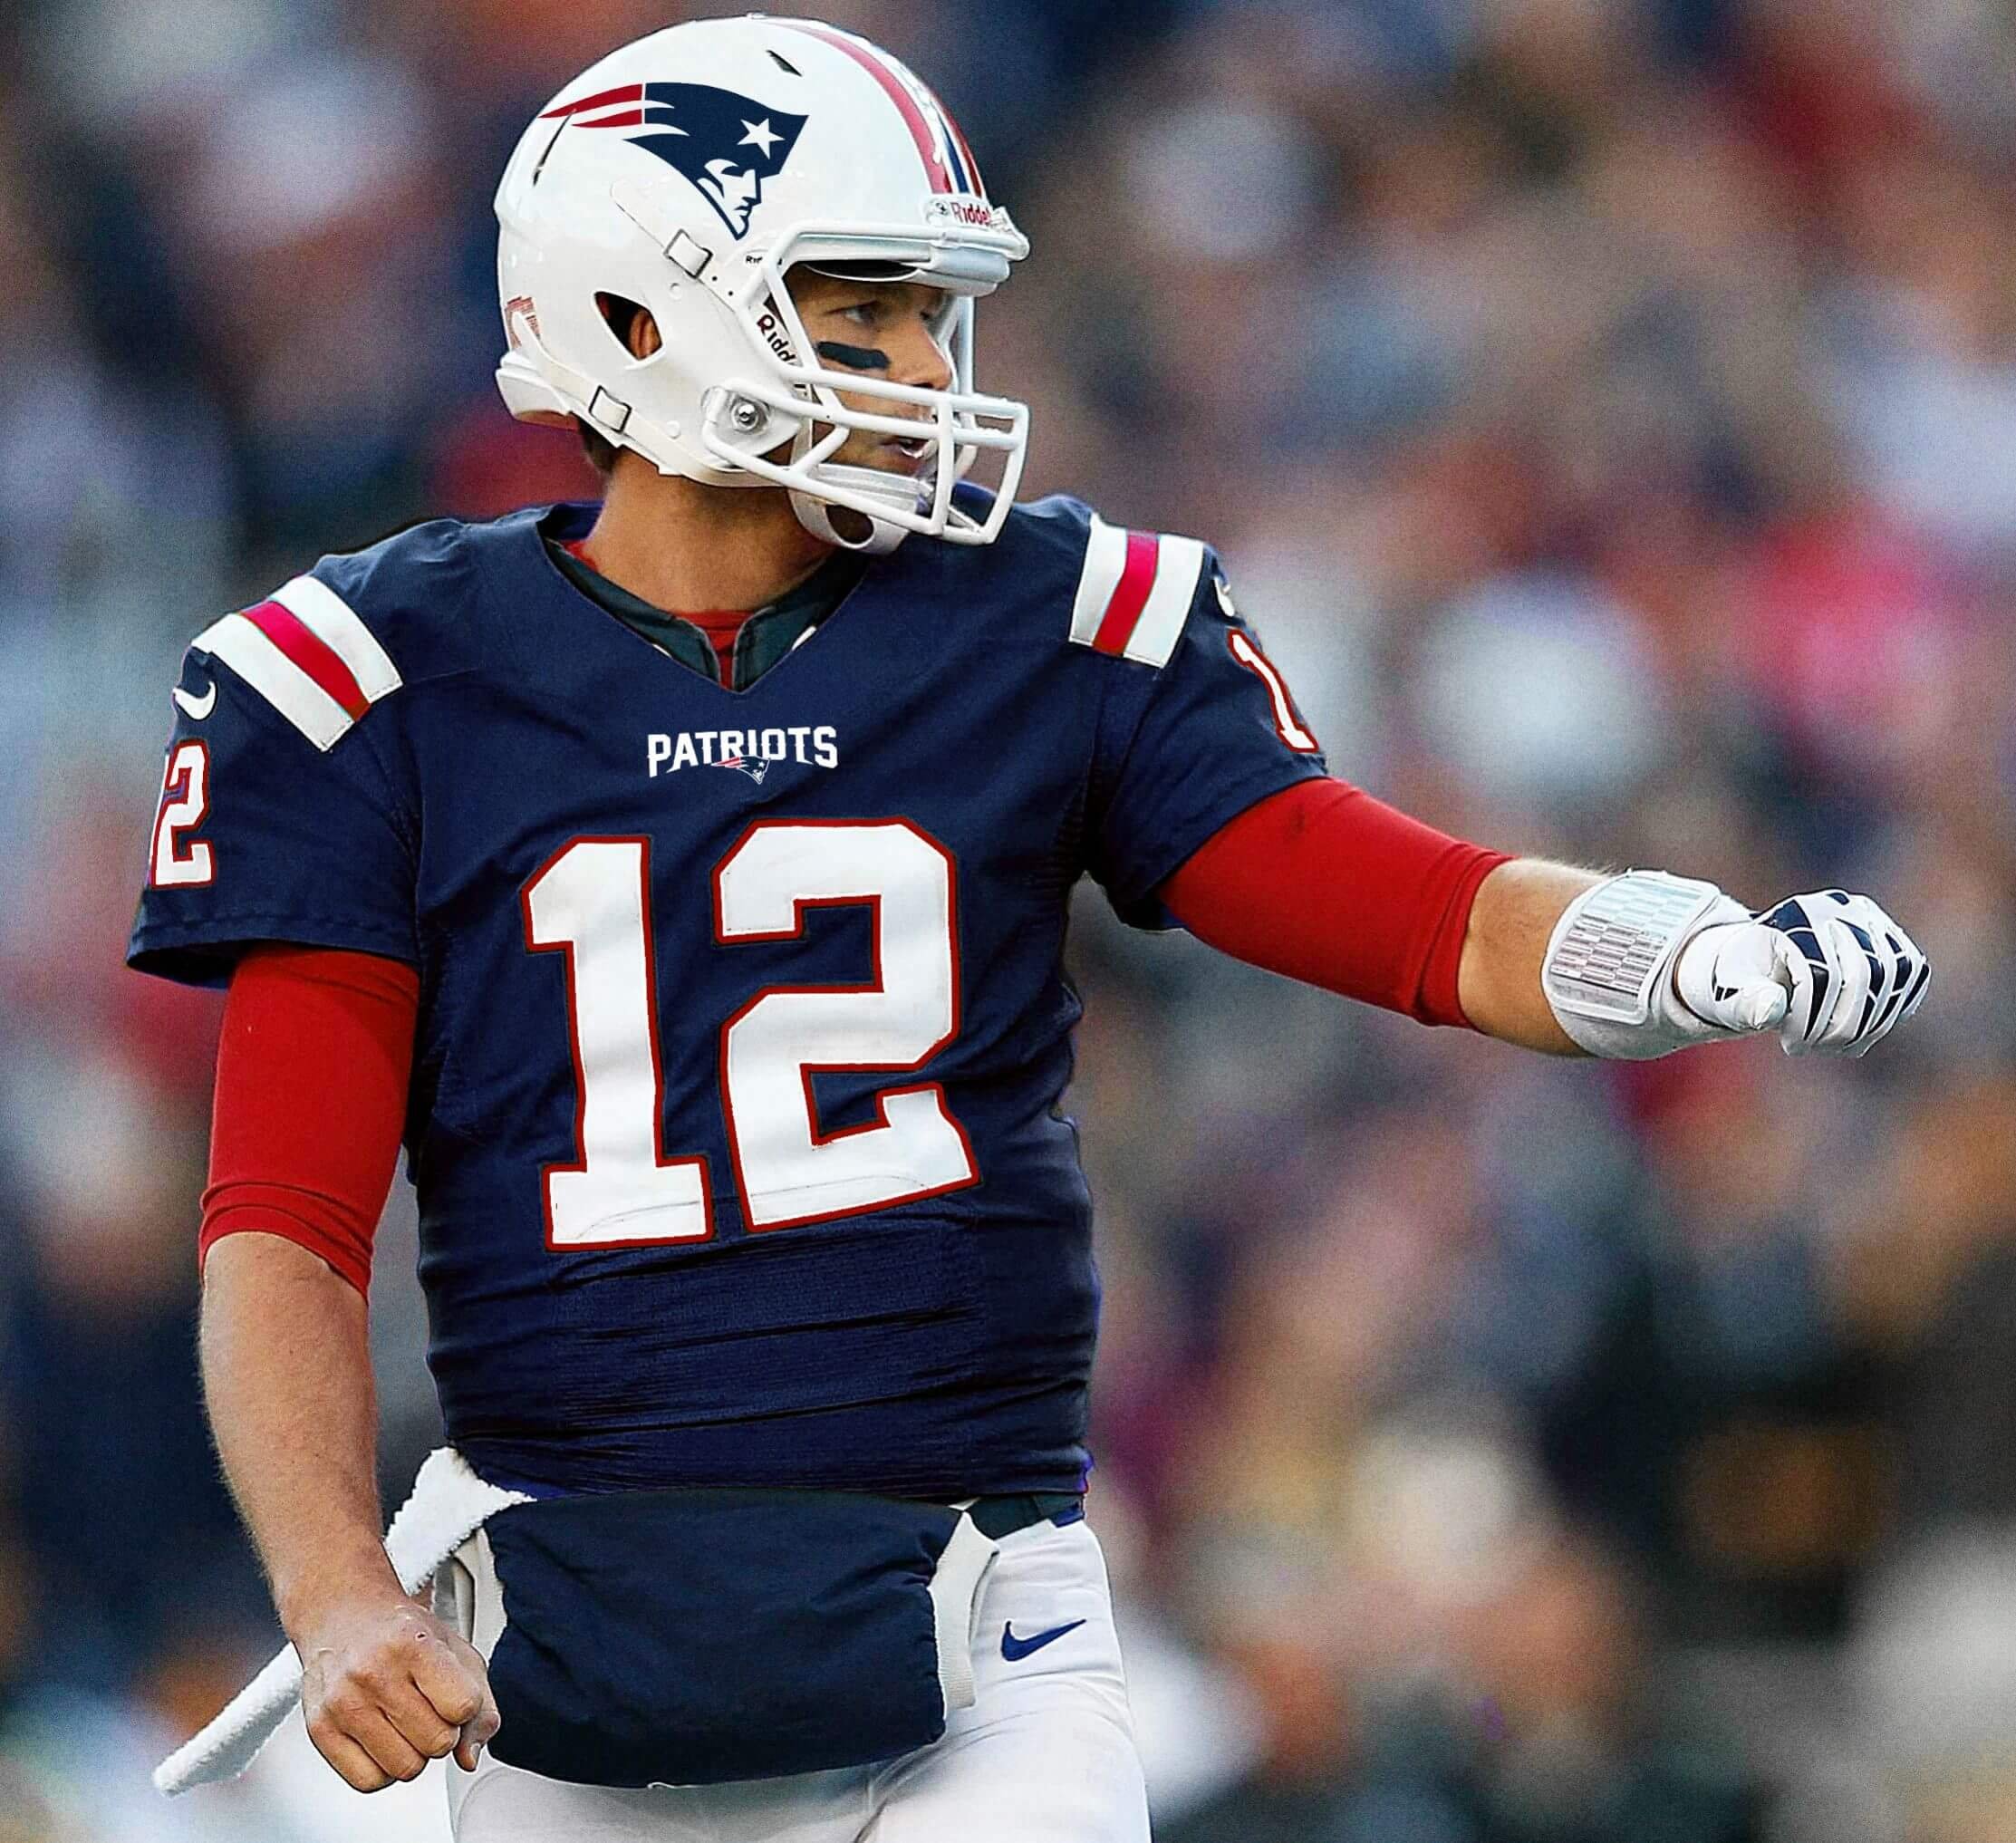 Tom Brady in NFL uniform